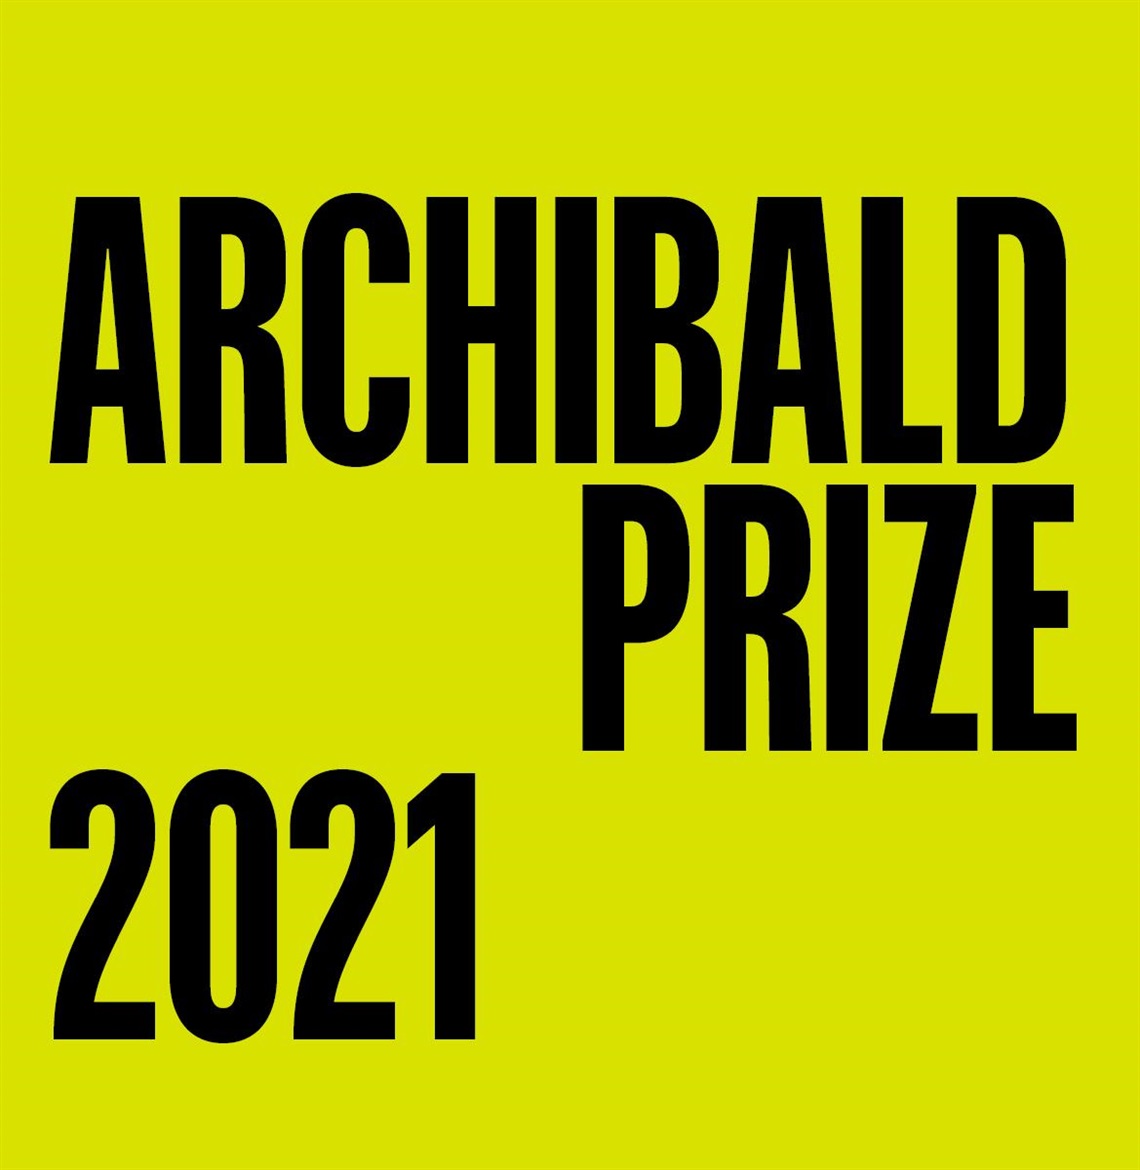 Archibald Prize 2021 Invitation